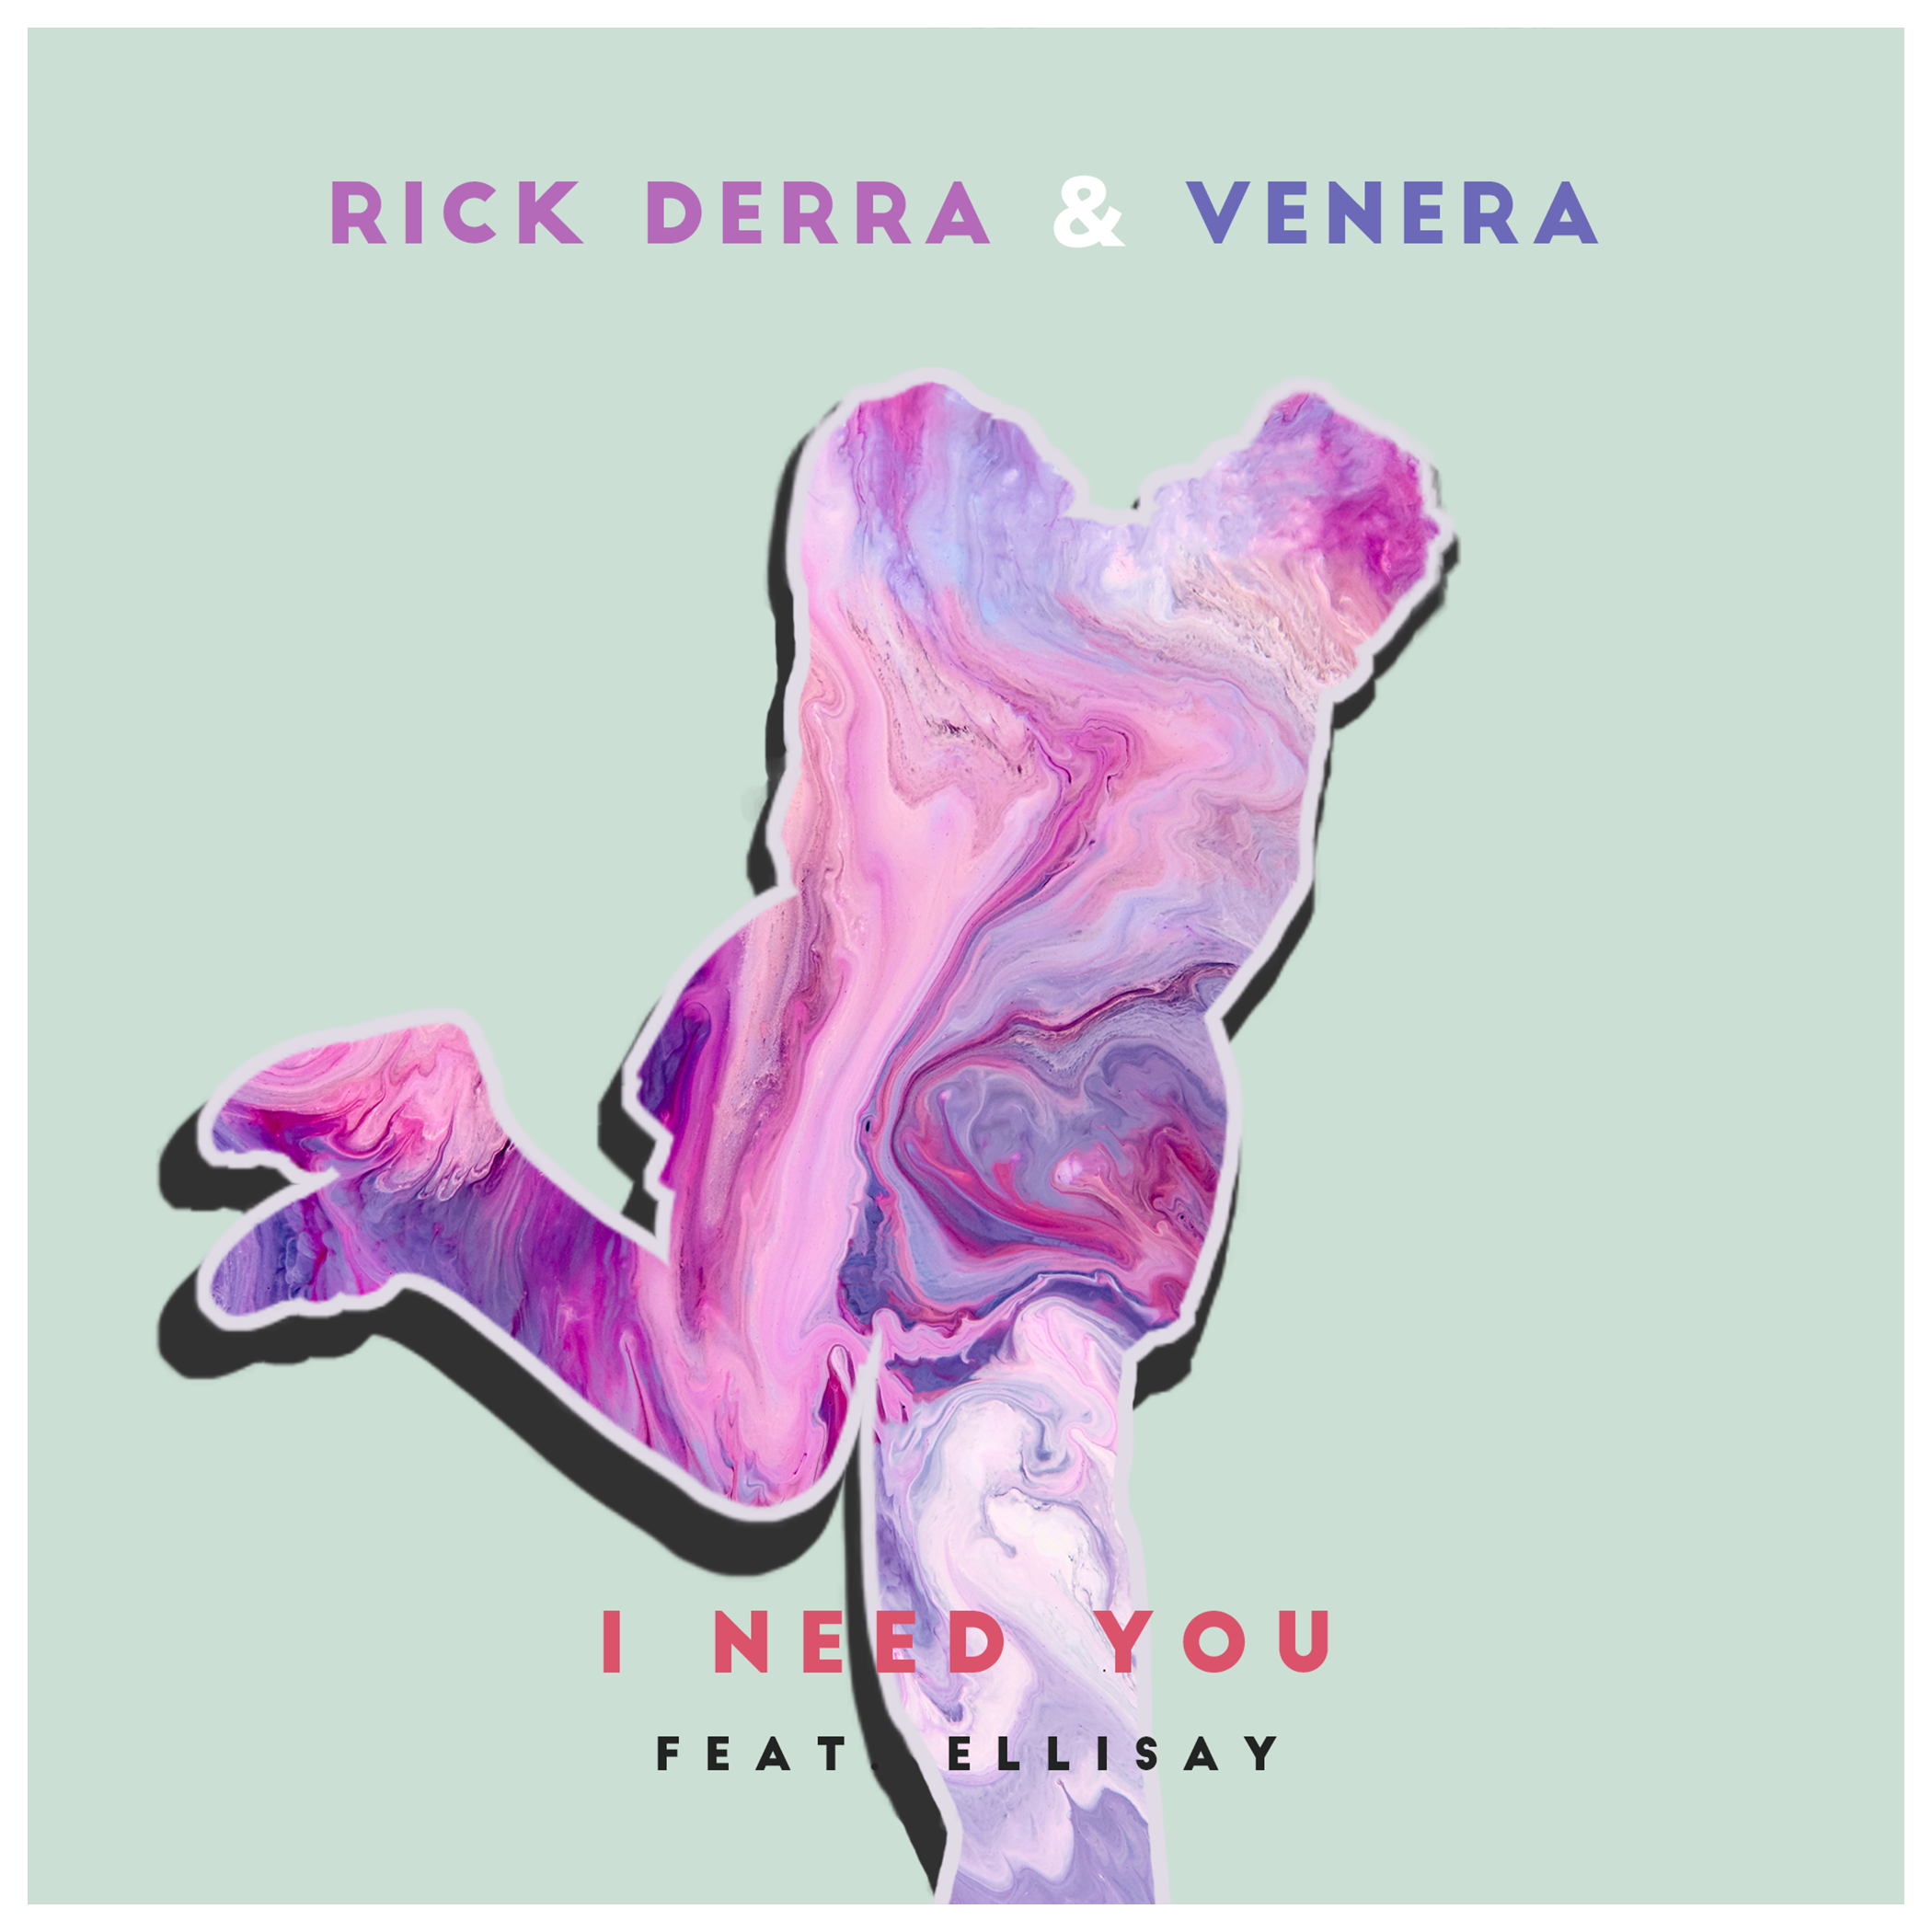 For The Future RICK DERRA & VENERA - I NEED YOU (FT. ELLISAY) artwork final